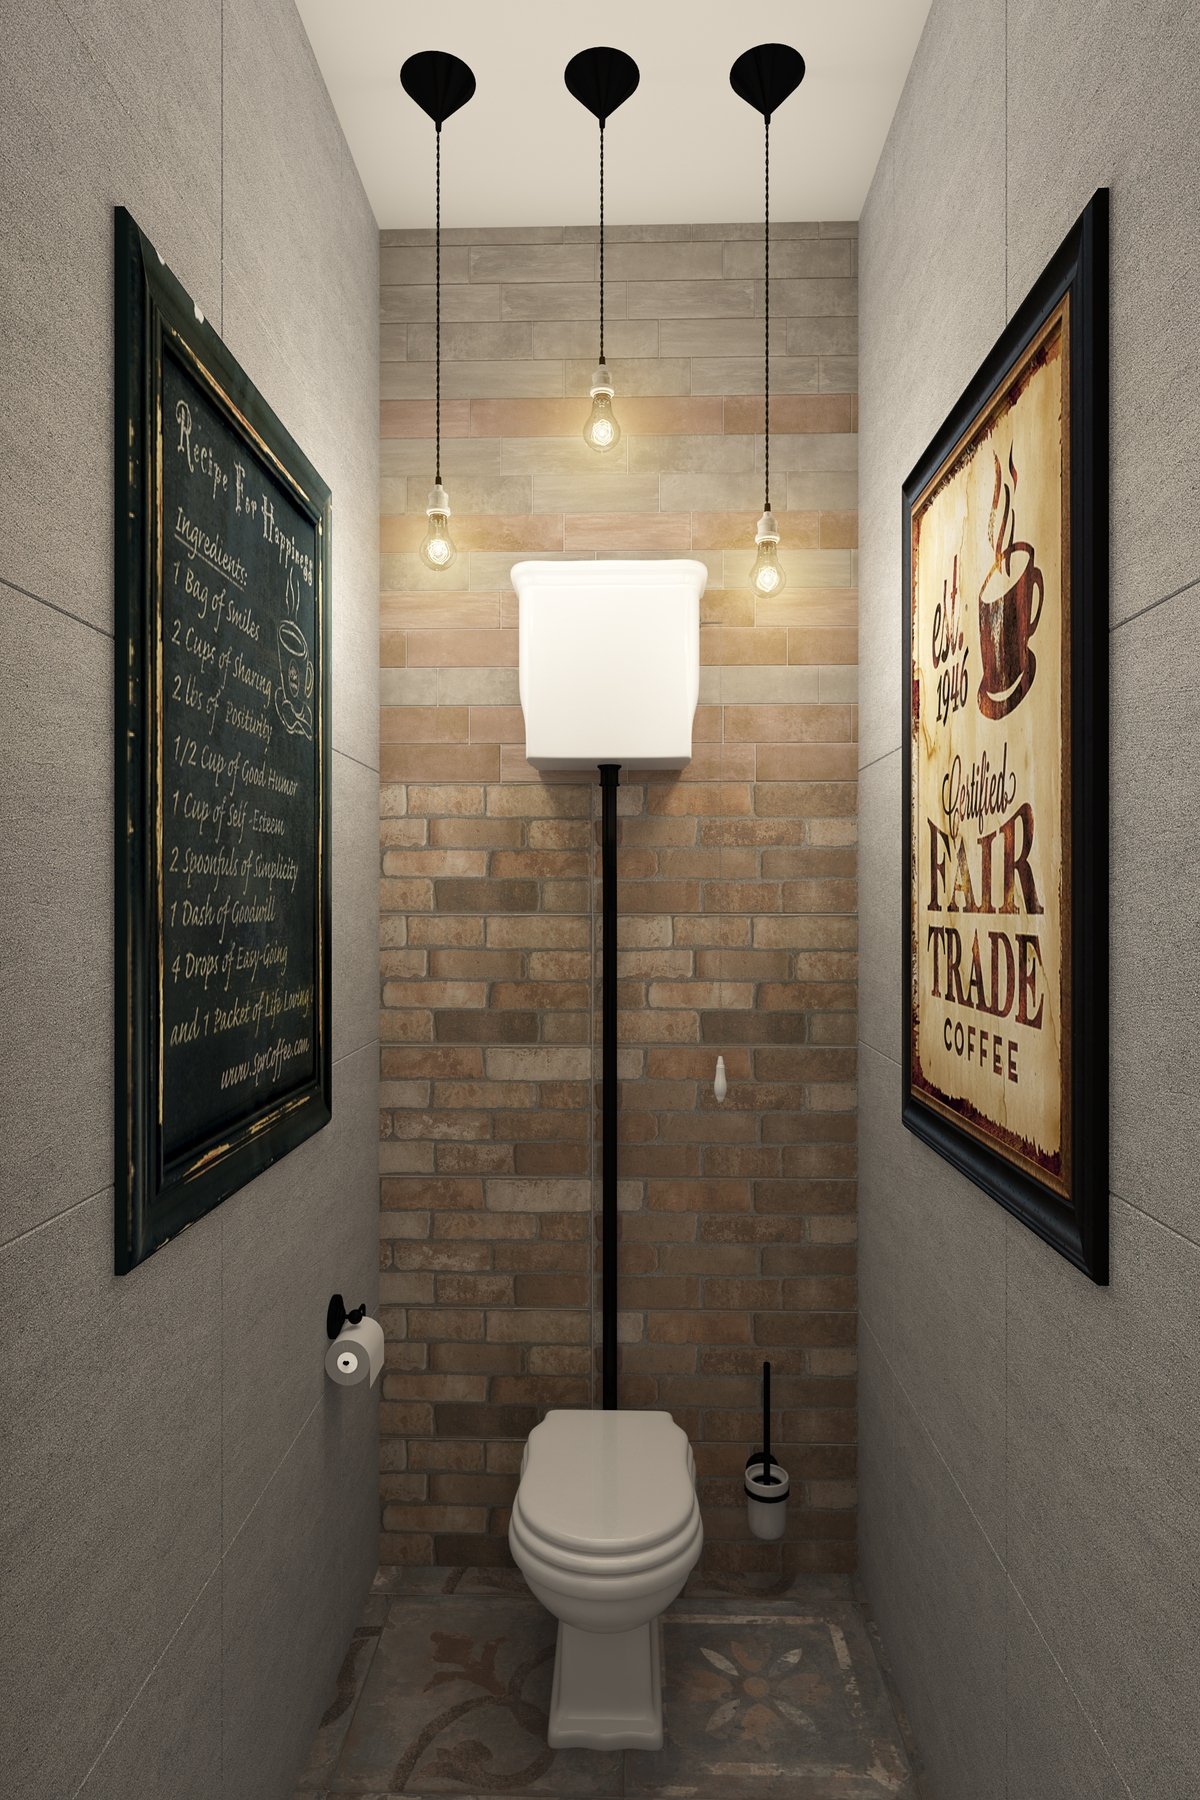 Потолочные светильники для ванной